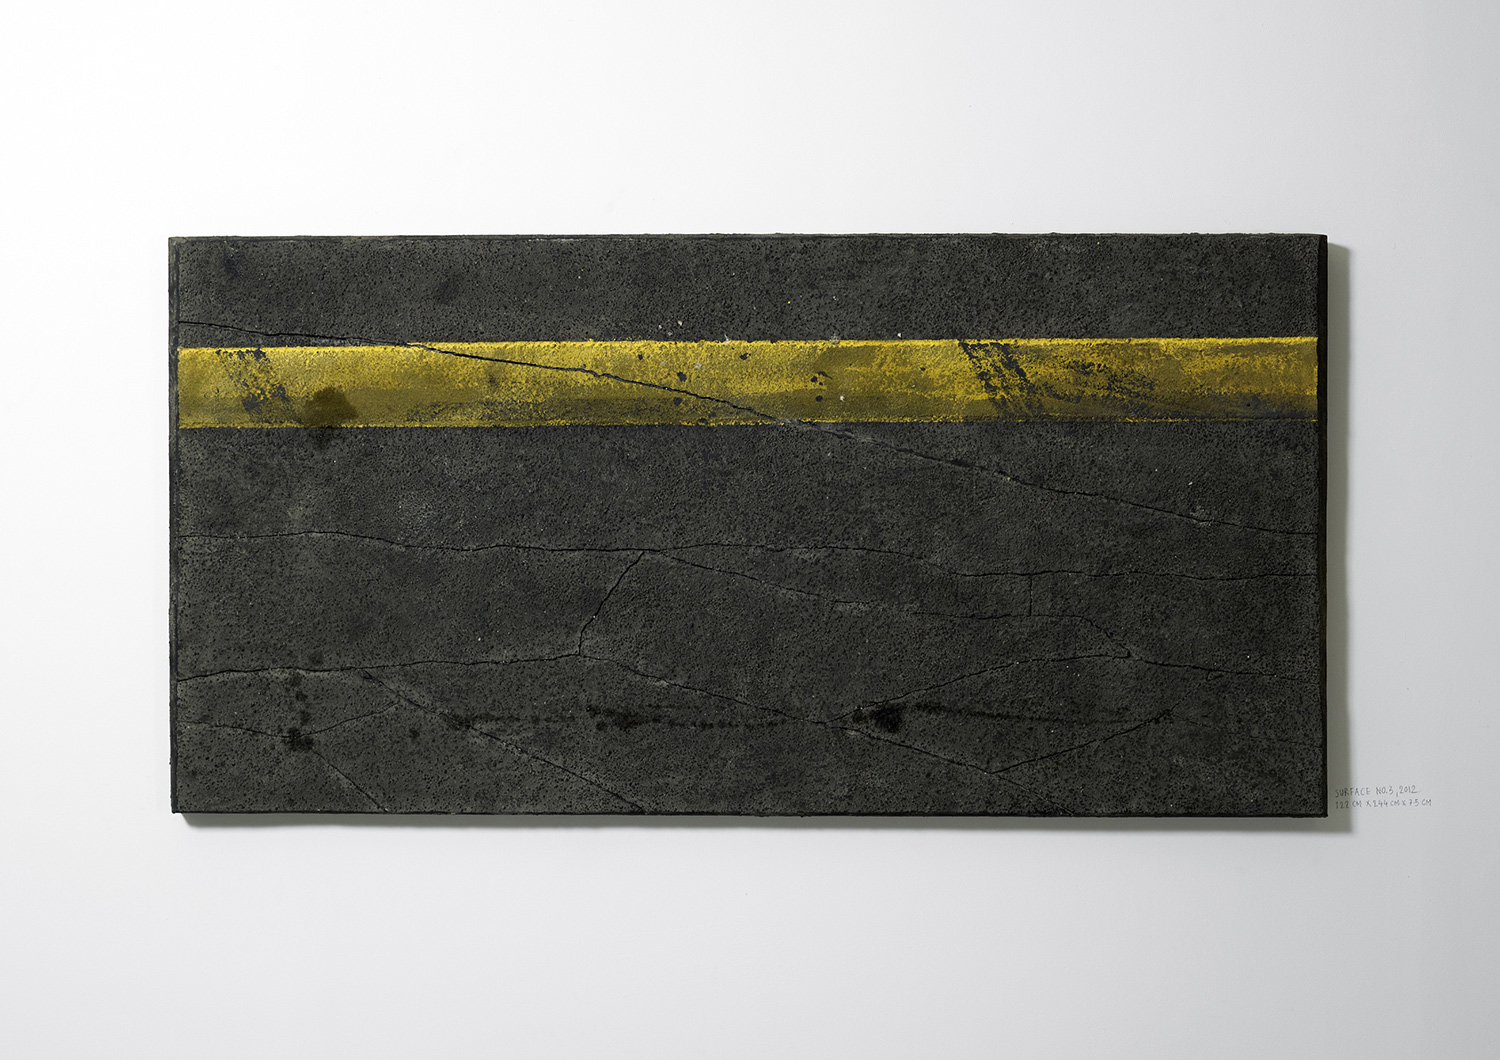   Surface No. 3 , 2012  122 cm x 244 cm x 7.5 cm 